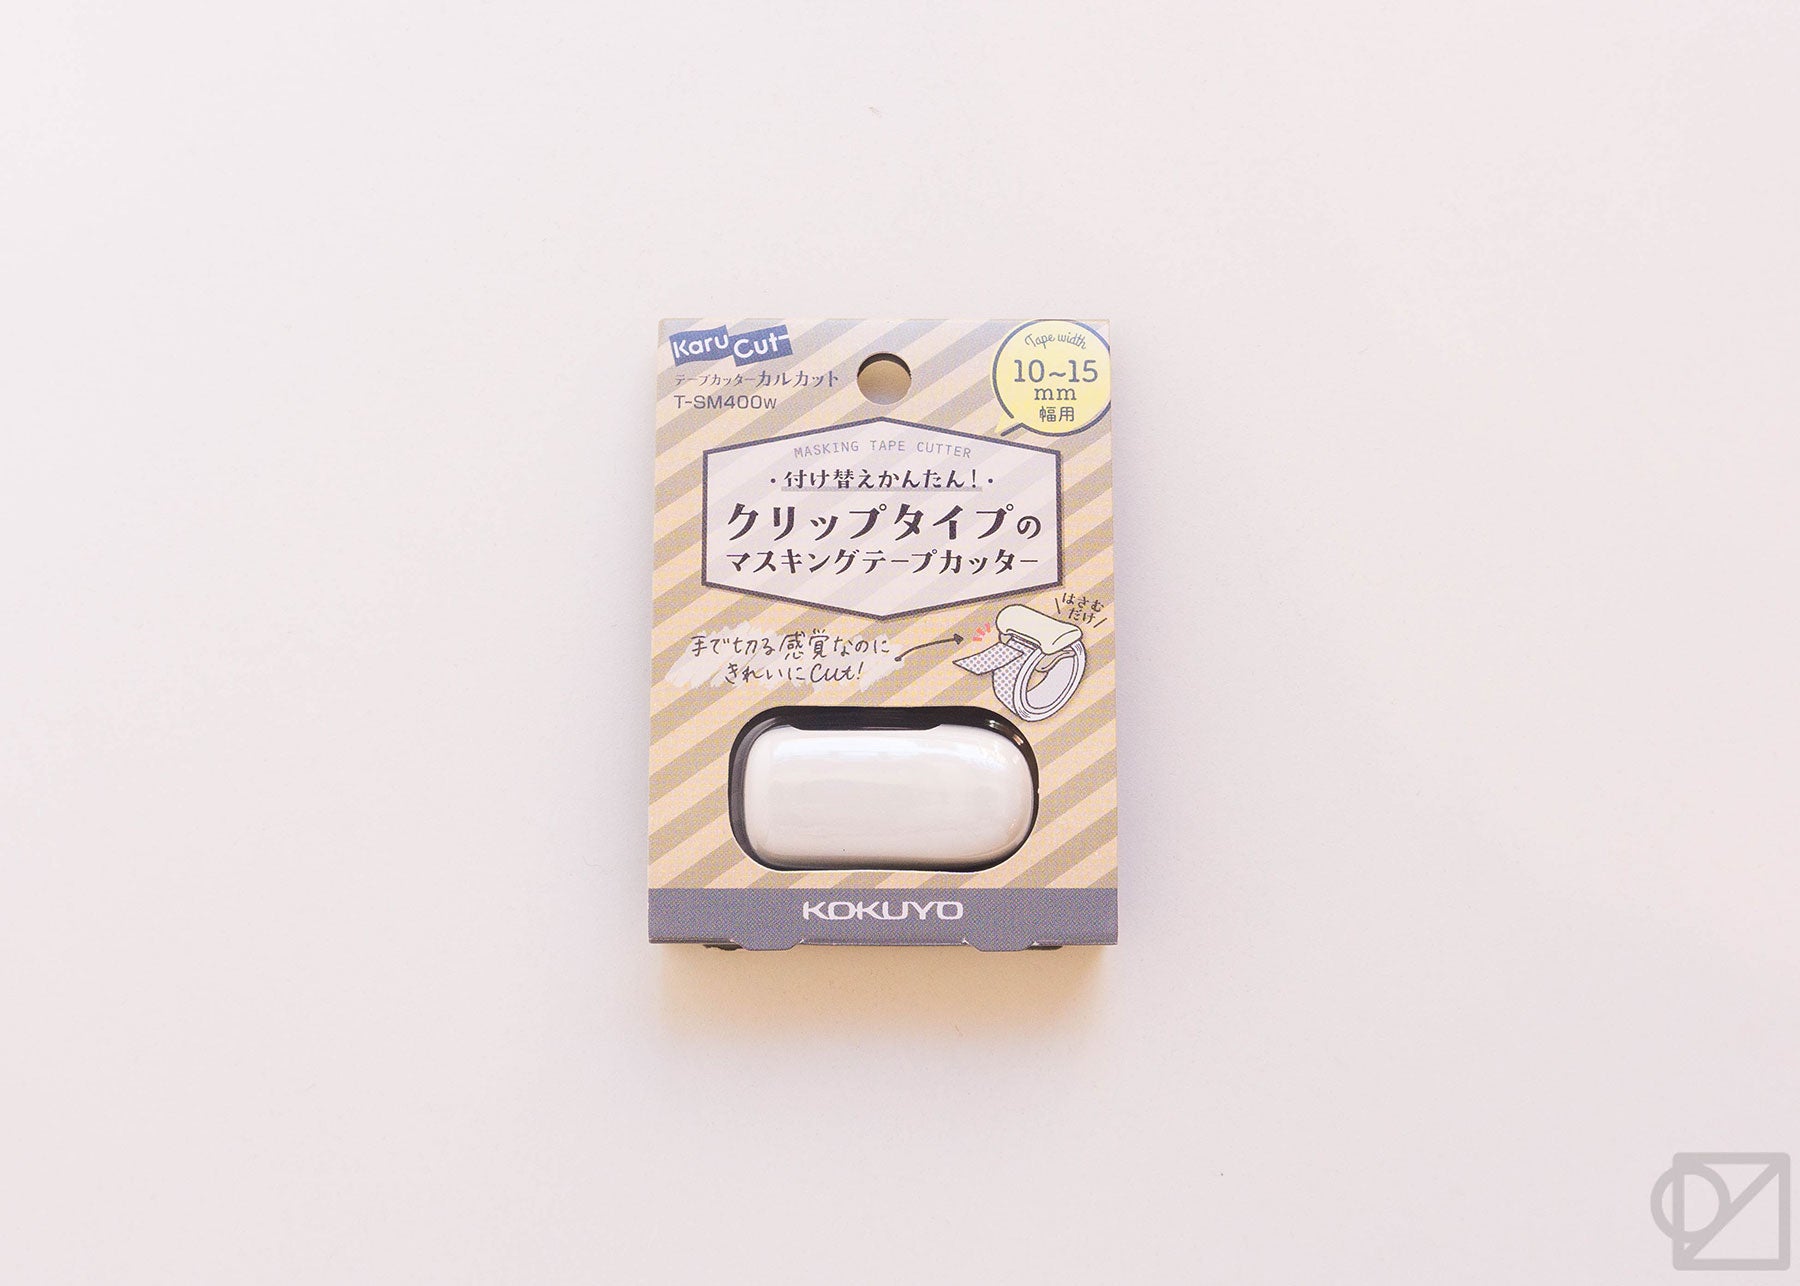 Kokuyo Me Clip-type Tape Cutter (10-15mm) Golden Green